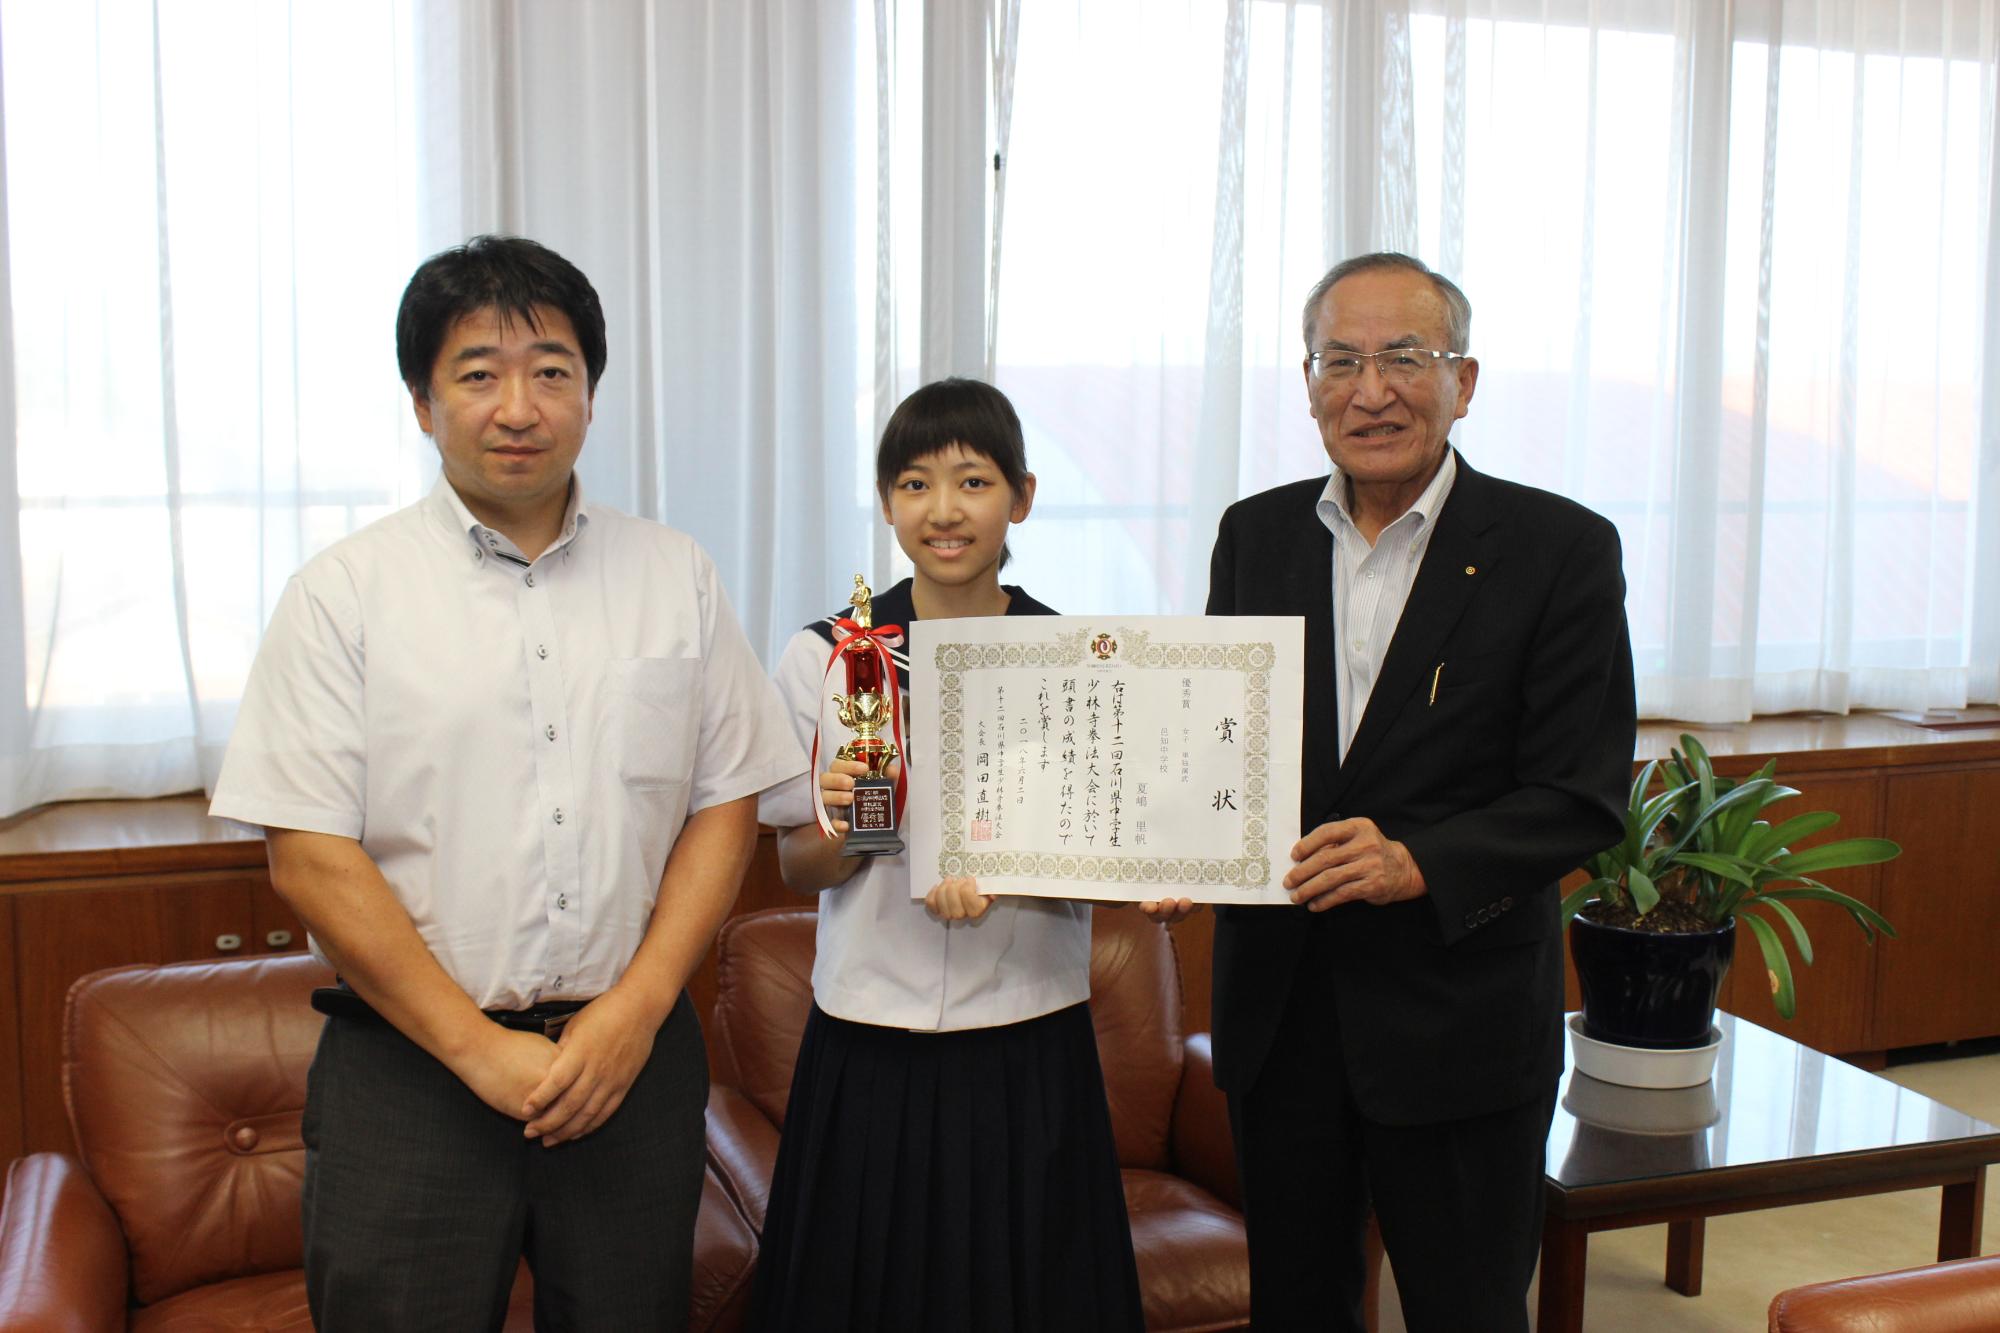 石川県中学生少林寺拳法大会で準優勝し、全国大会に出場する夏嶋里帆さん（中央）と指導者の畑山さん（左）